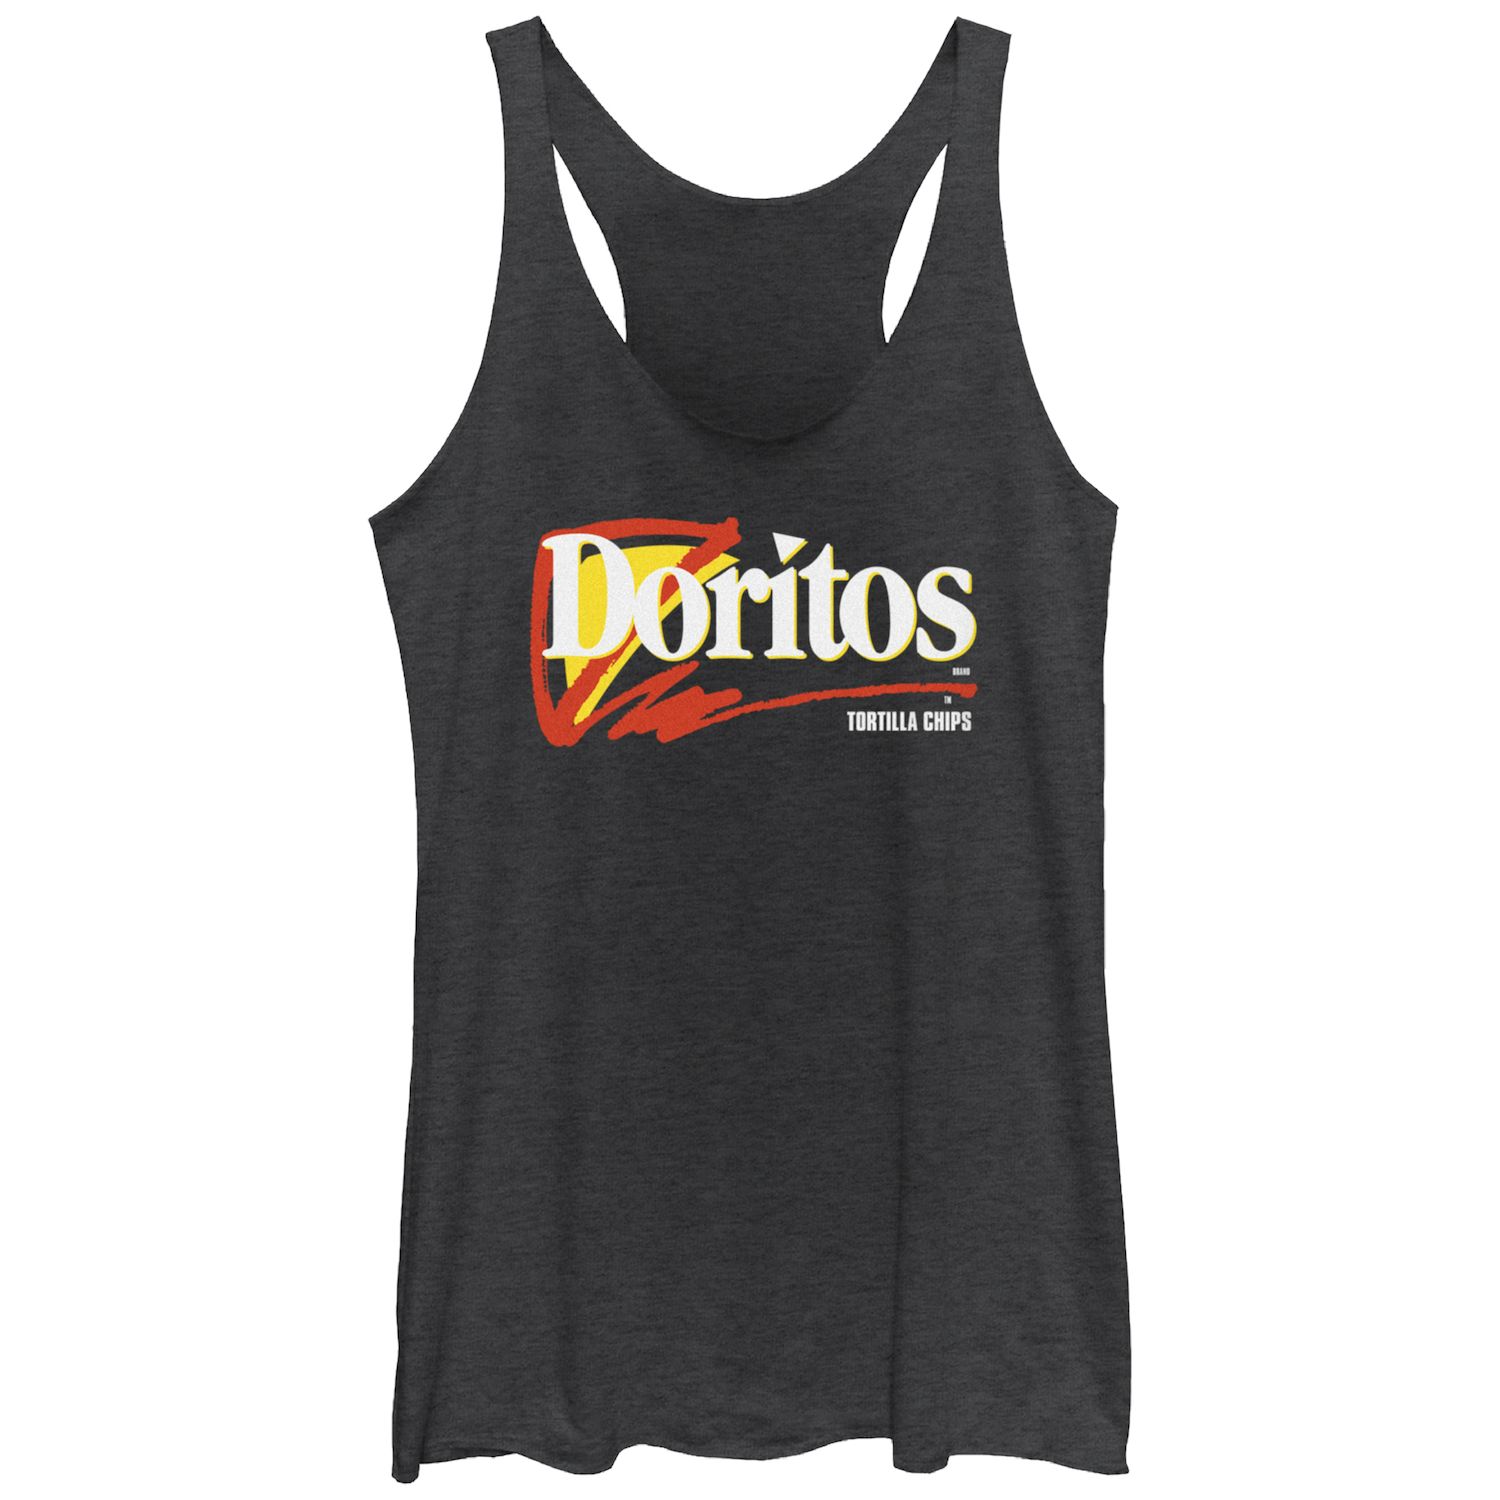 Майка-борцовка с логотипом Doritos Tortilla Chips для юниоров Doritos doritos dinamita flaming hot 145 gm